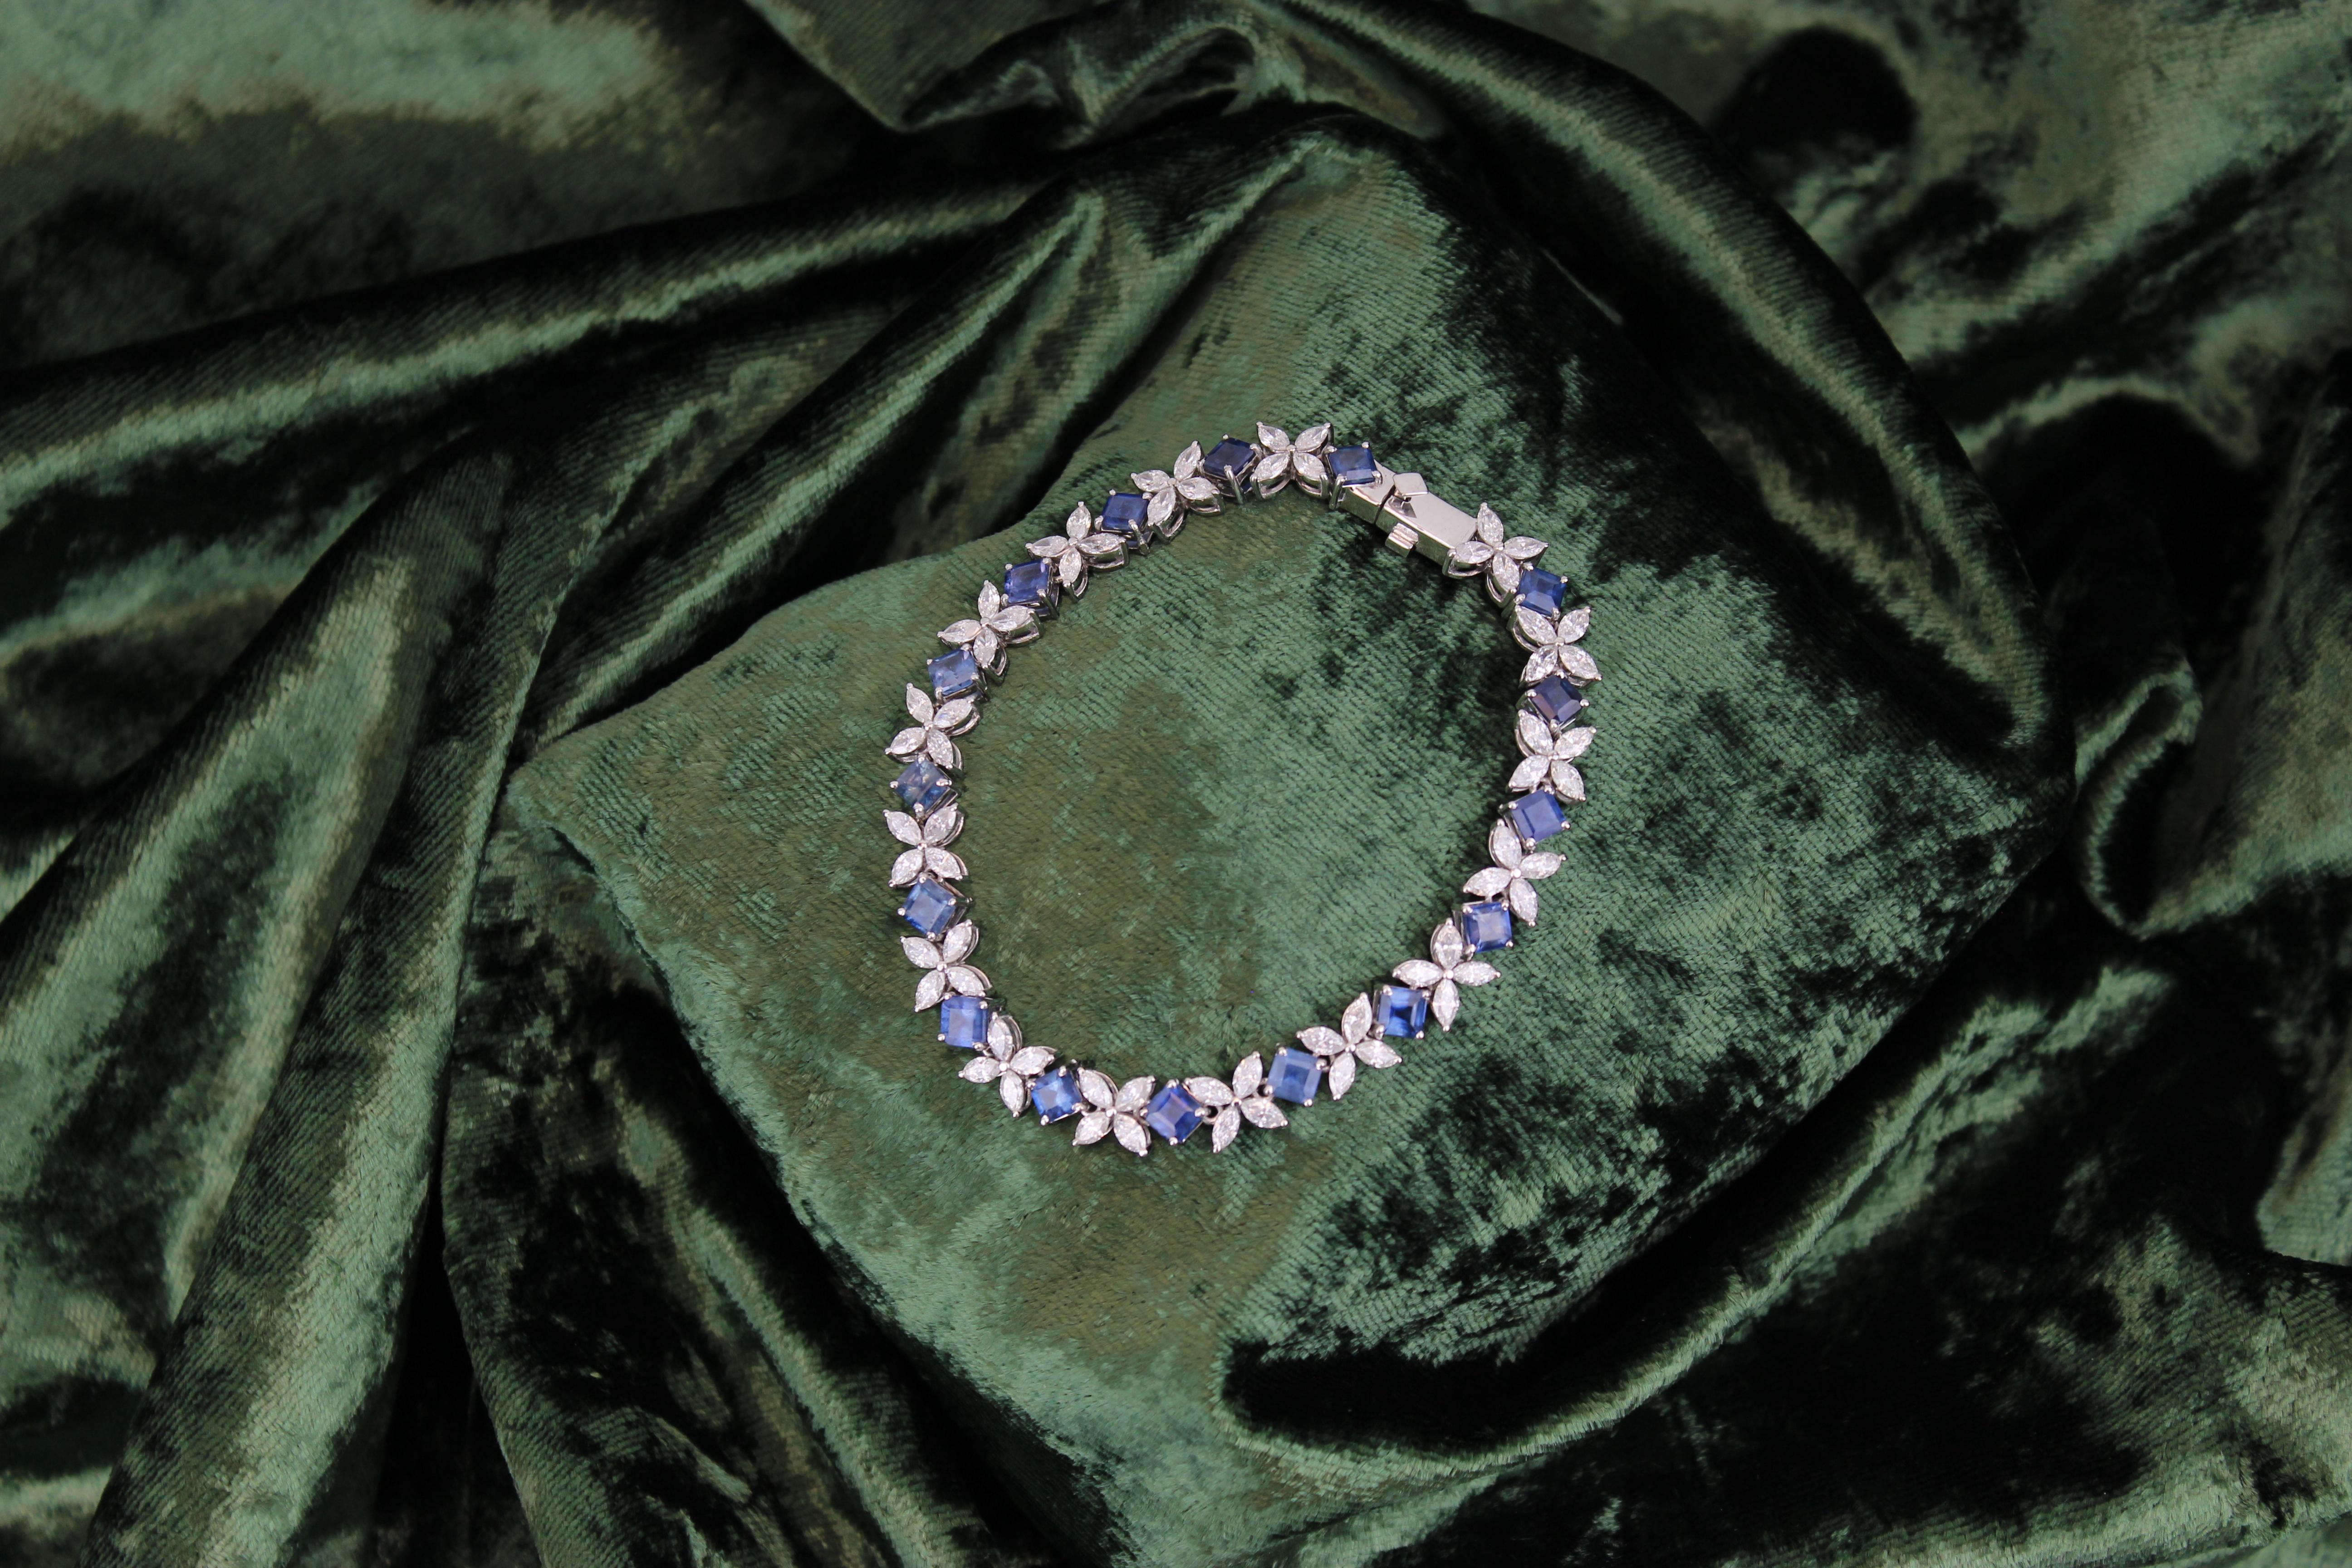 Le bracelet de tennis en diamant Marquise avec saphir bleu taille princesse naturel est un bijou exquis en or massif 18 carats. Il présente une combinaison de diamants taille marquise et de saphirs taille princesse disposés selon un motif floral.